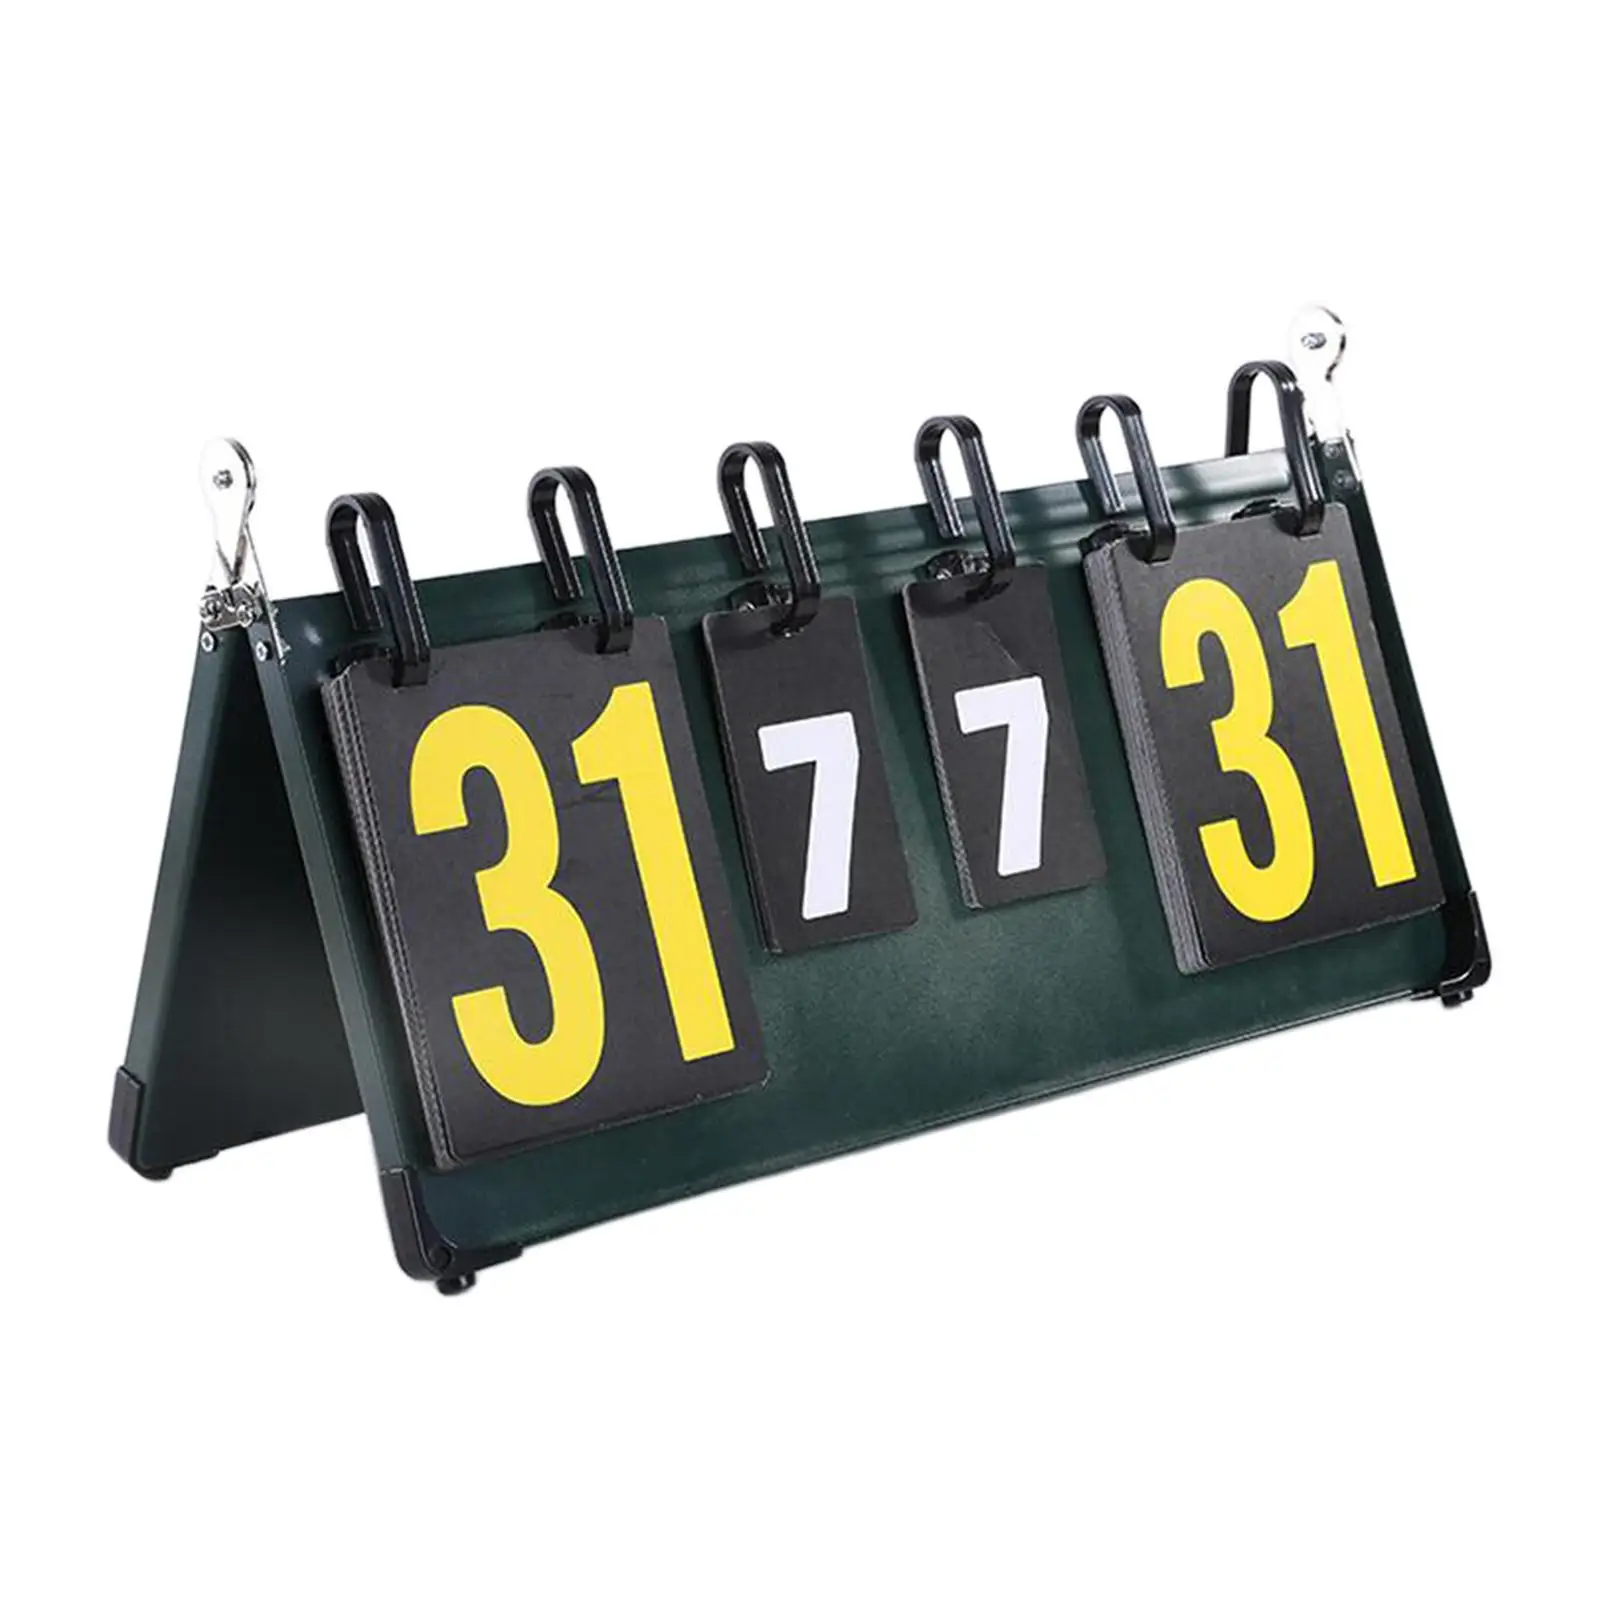 Table Scoreboard Professional Scorekeeper Score Keeper Score Board for Basketball Indoor Outdoor Soccer Baseball Tennis